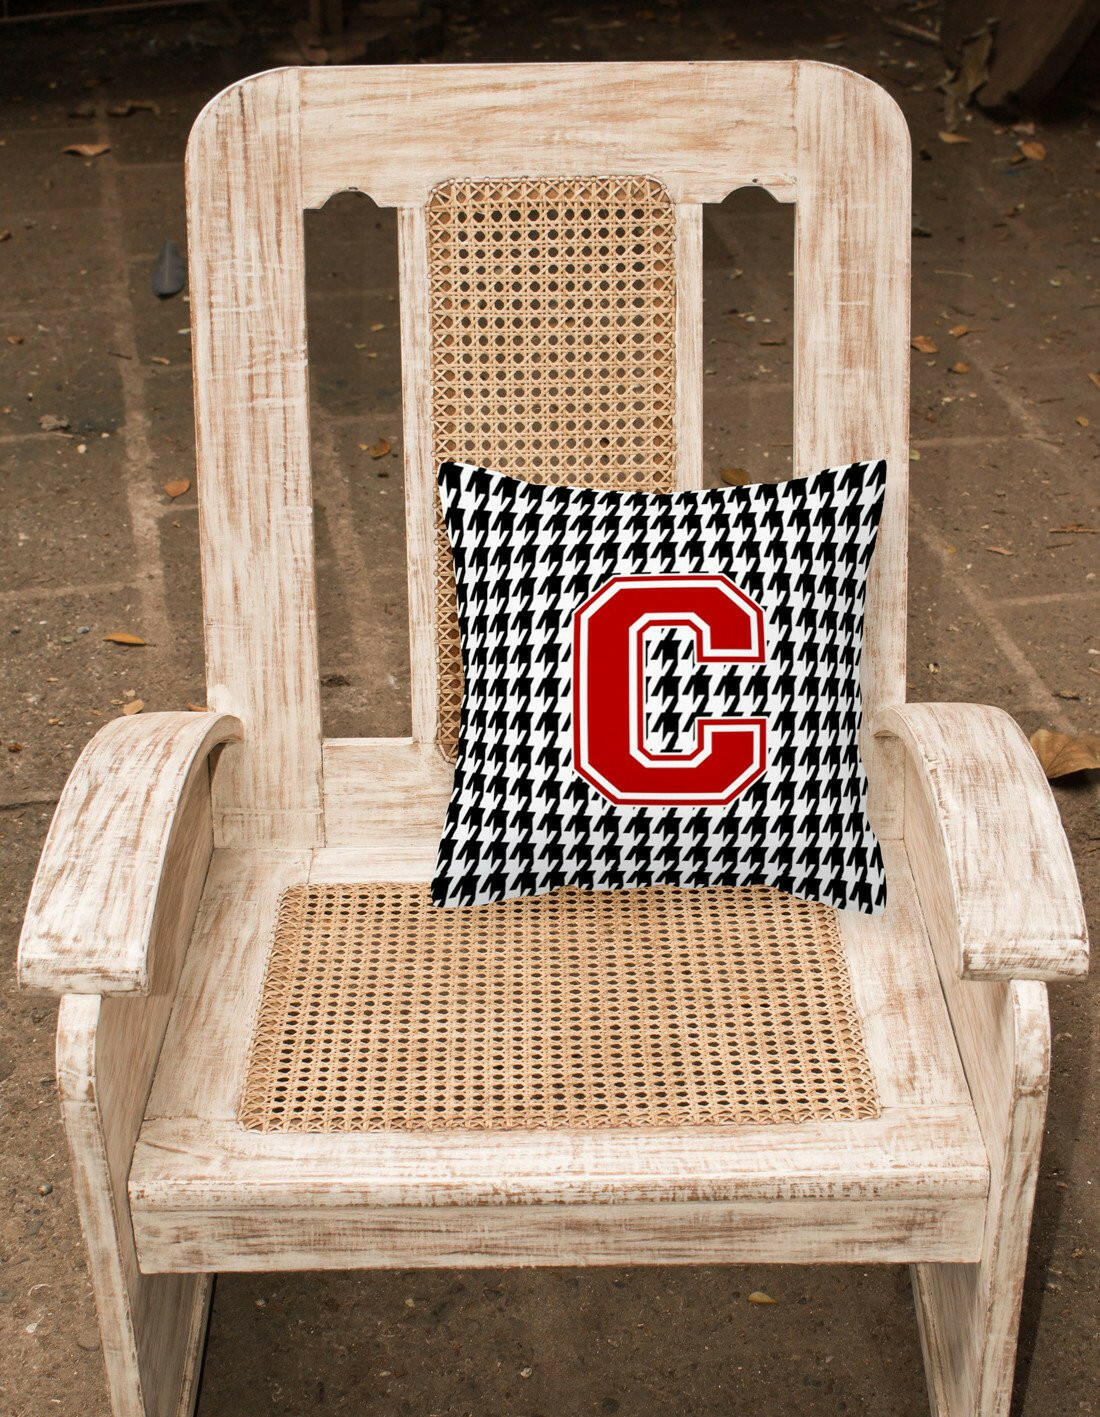 Monogram - Initial C Houndstooth Decorative   Canvas Fabric Pillow CJ1021 - the-store.com